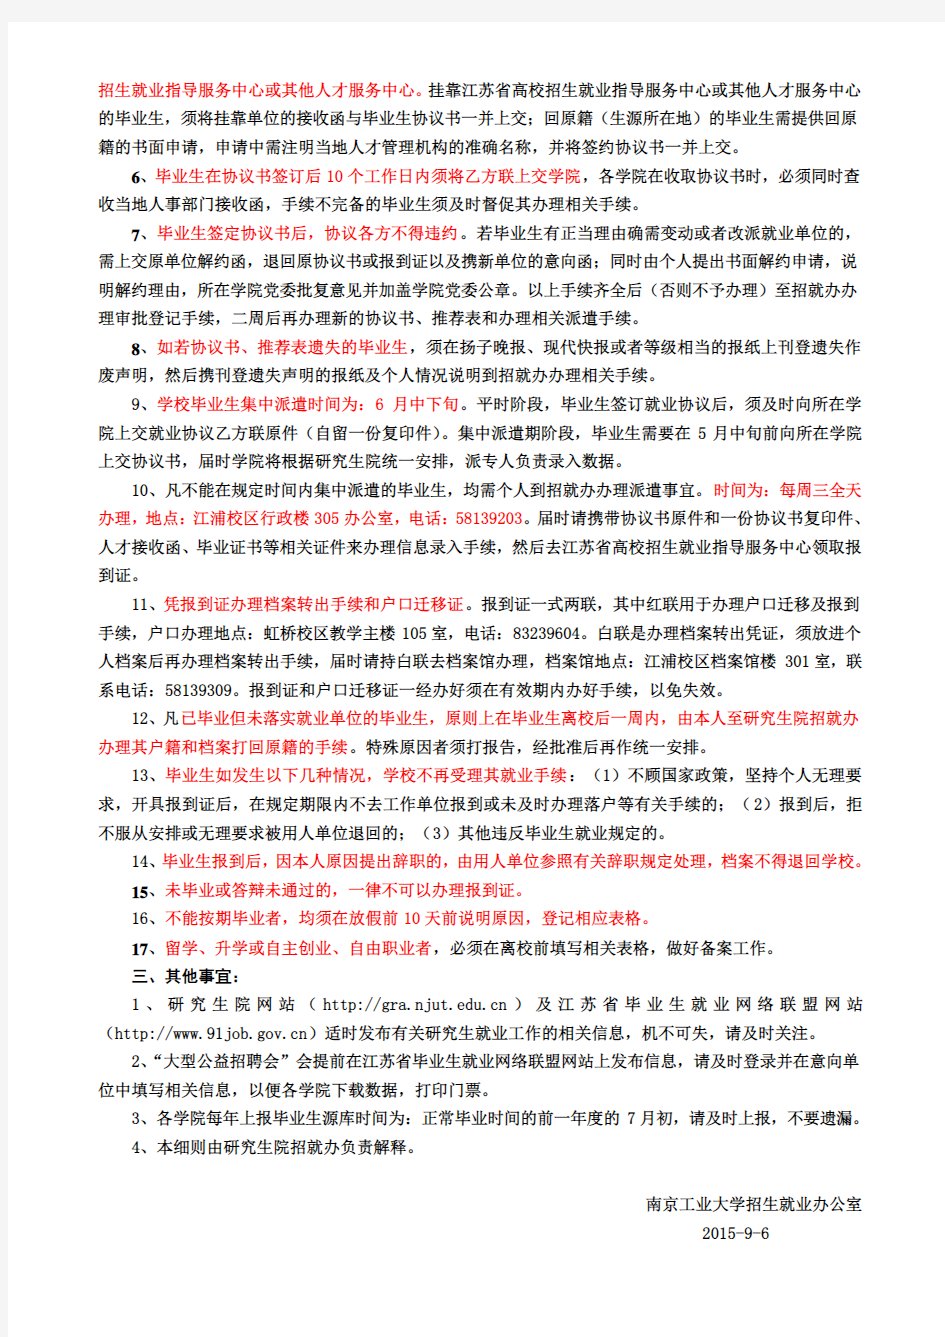 南京工业大学研究生就业工作管理细则